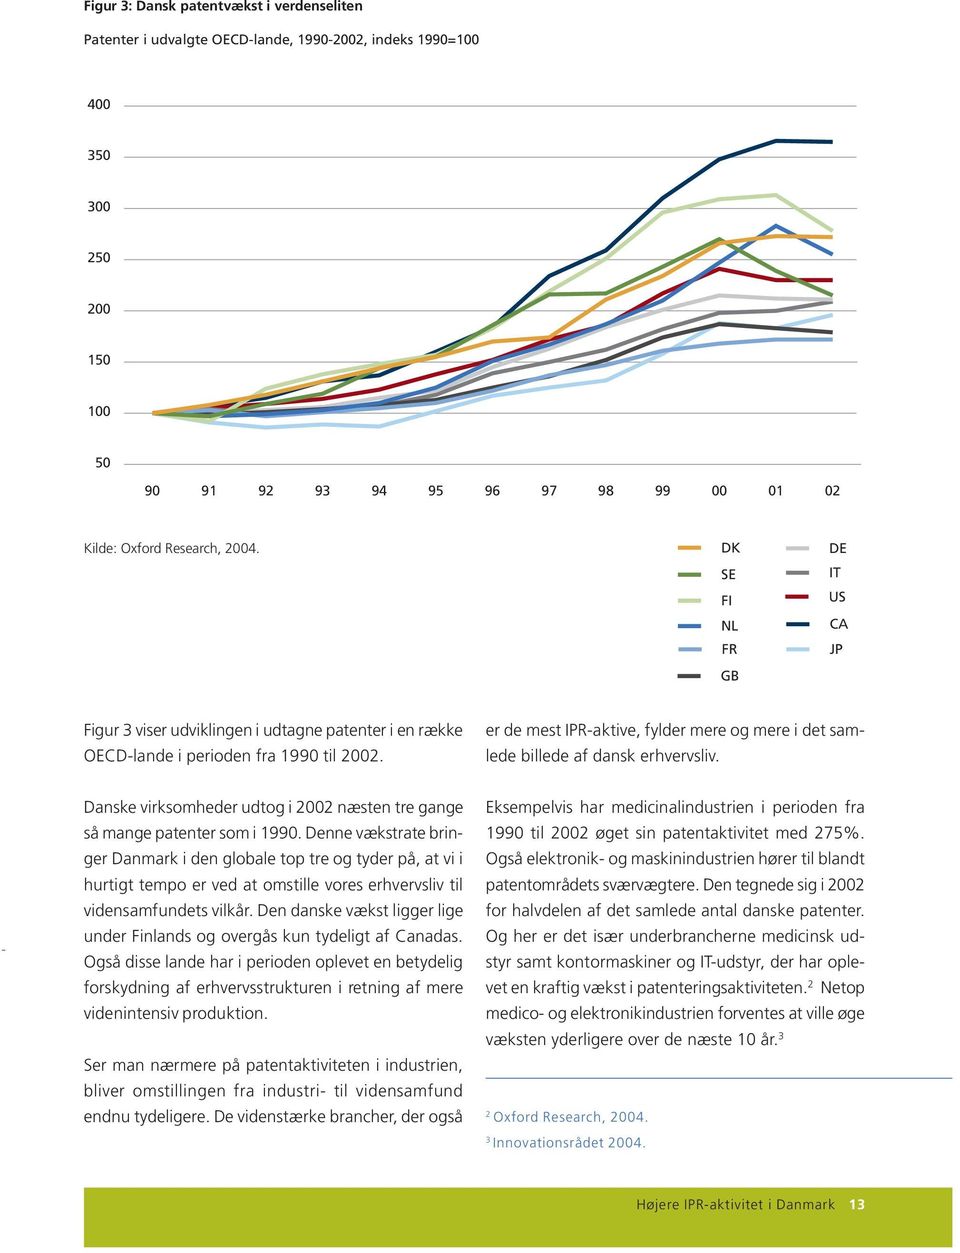 er de mest IPR-aktive, fylder mere og mere i det samlede billede af dansk erhvervsliv. Danske virksomheder udtog i 2002 næsten tre gange så mange patenter som i 1990.